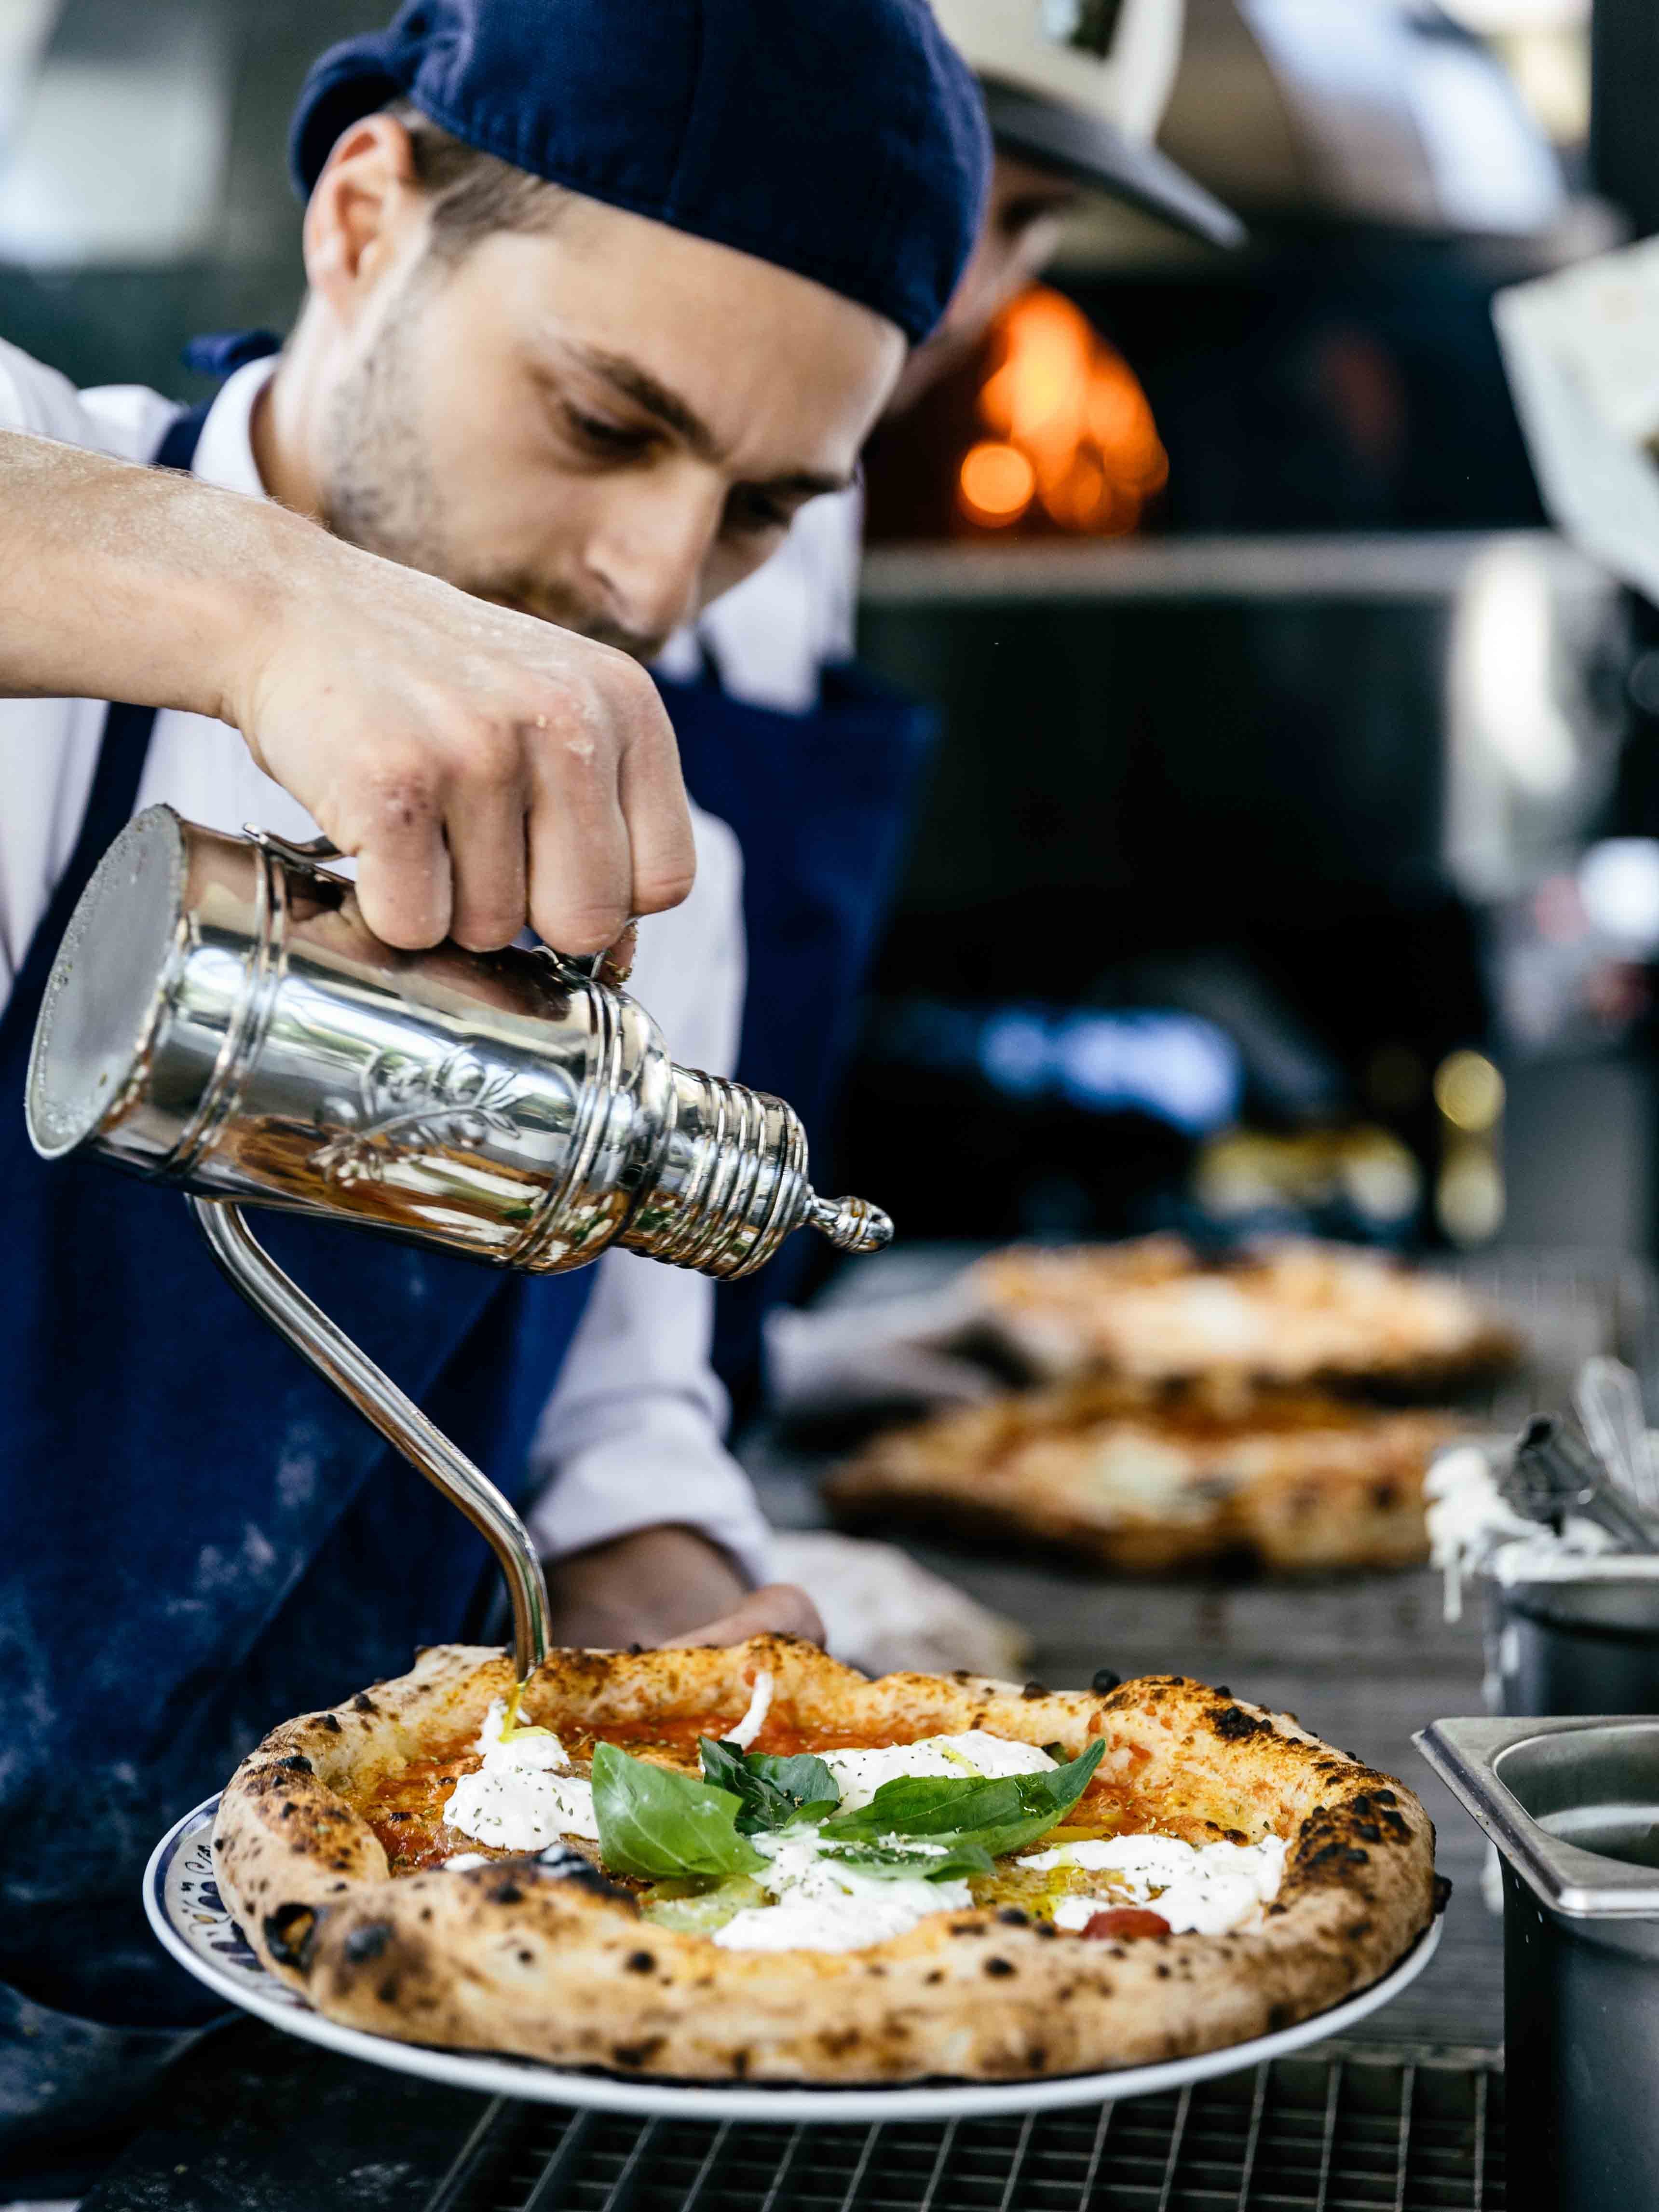 Start-up, pizzas et burrata... À quoi ressemble La Felicità, le plus grand restaurant d’Europe